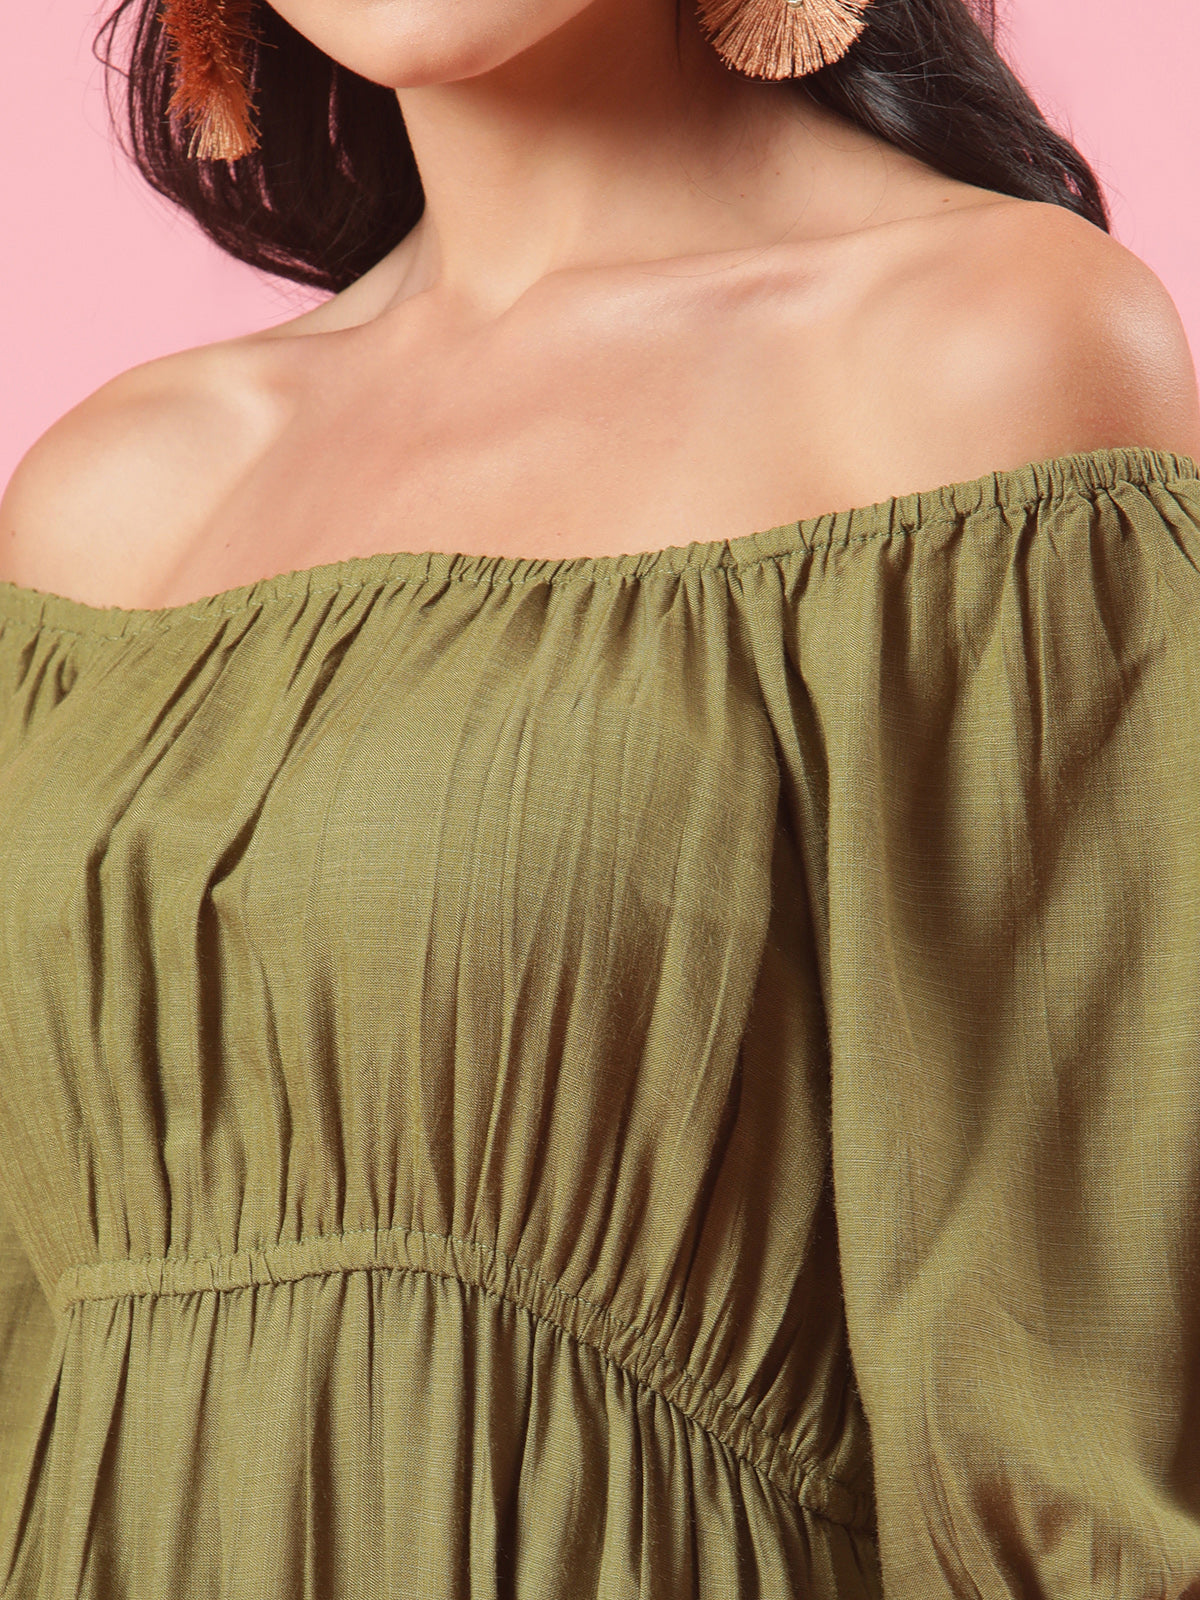 Savana Olive Green Off-Shoulder Casual Summer Dress with Slit